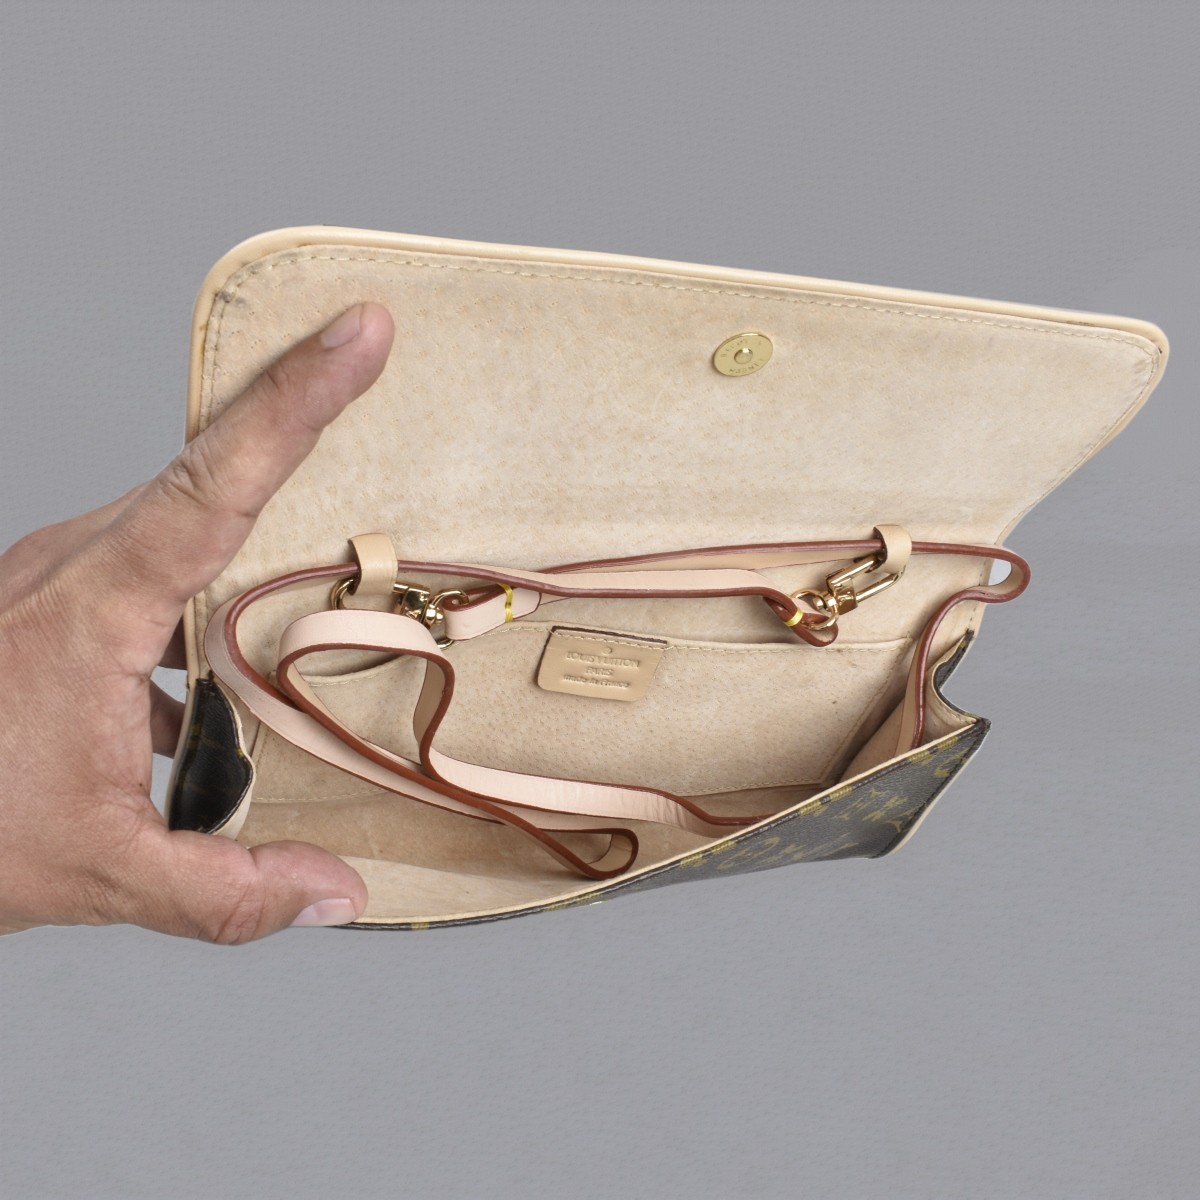 REPLICA Louis Vuitton Handbags